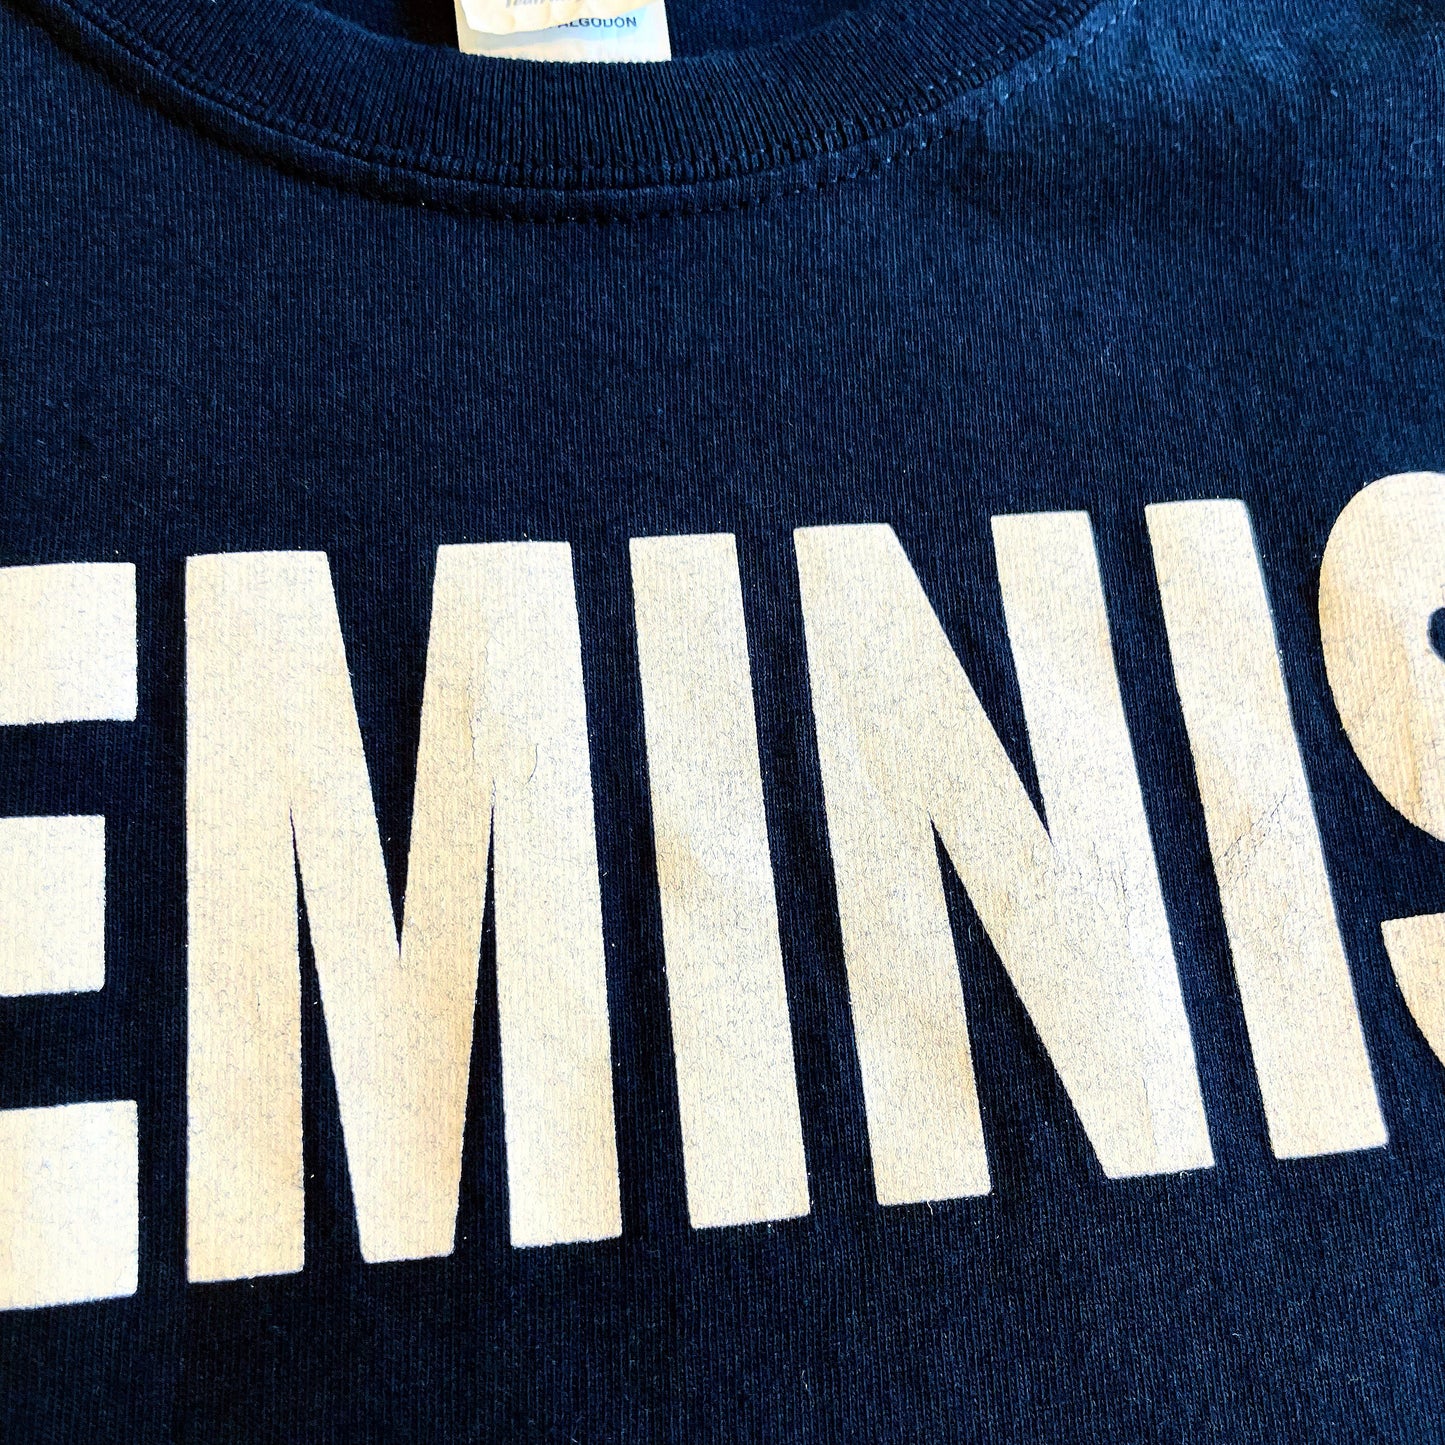 90s〜00s〜 GILDAN T-shirt FEMINIST フェミニスト Tシャツ ヴィンテージ